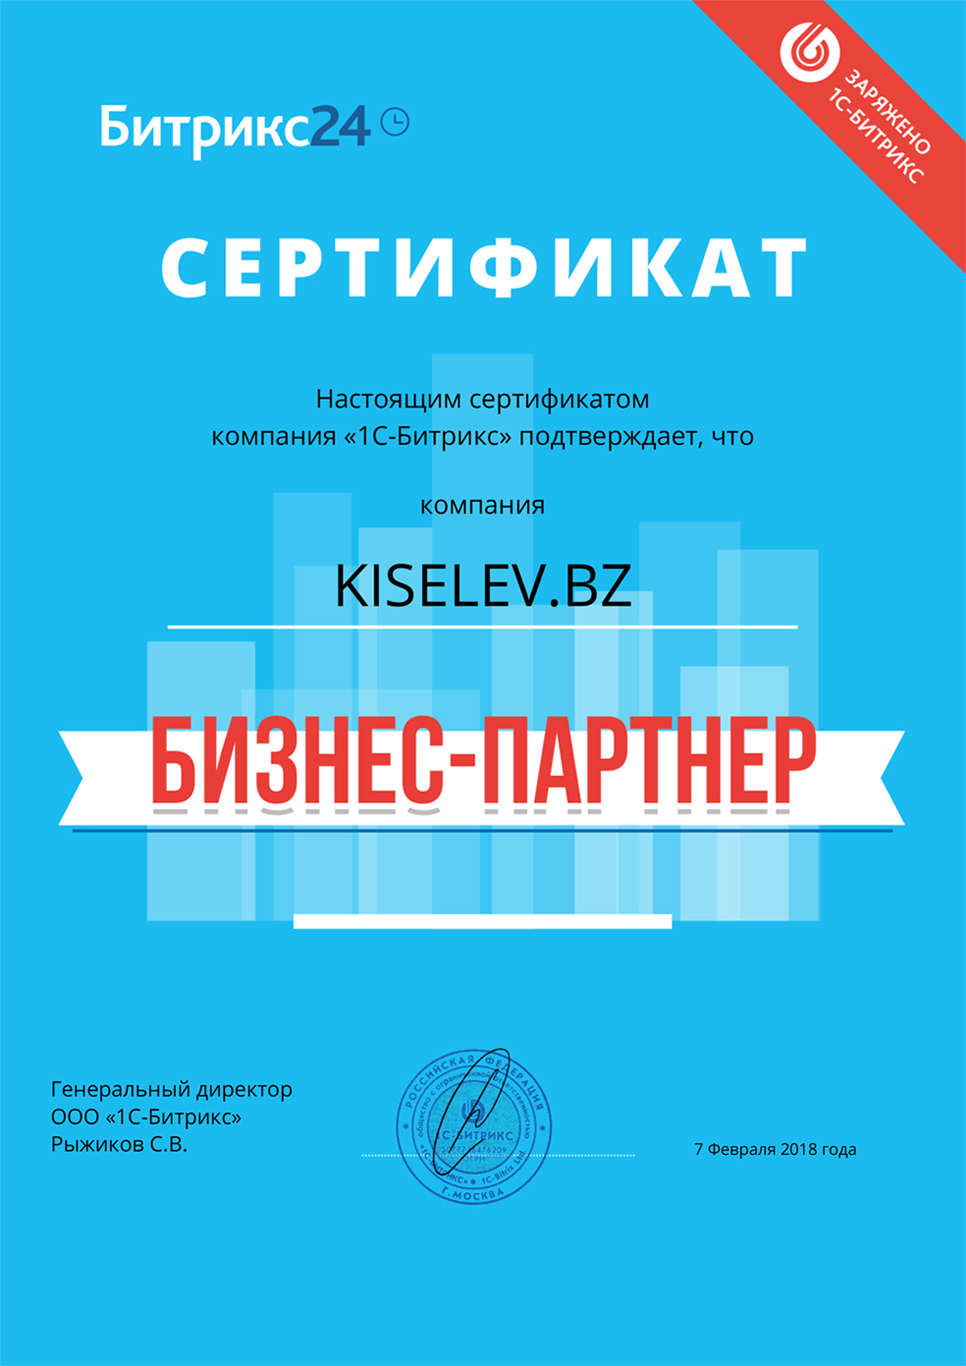 Сертификат партнёра по АМОСРМ в Омске